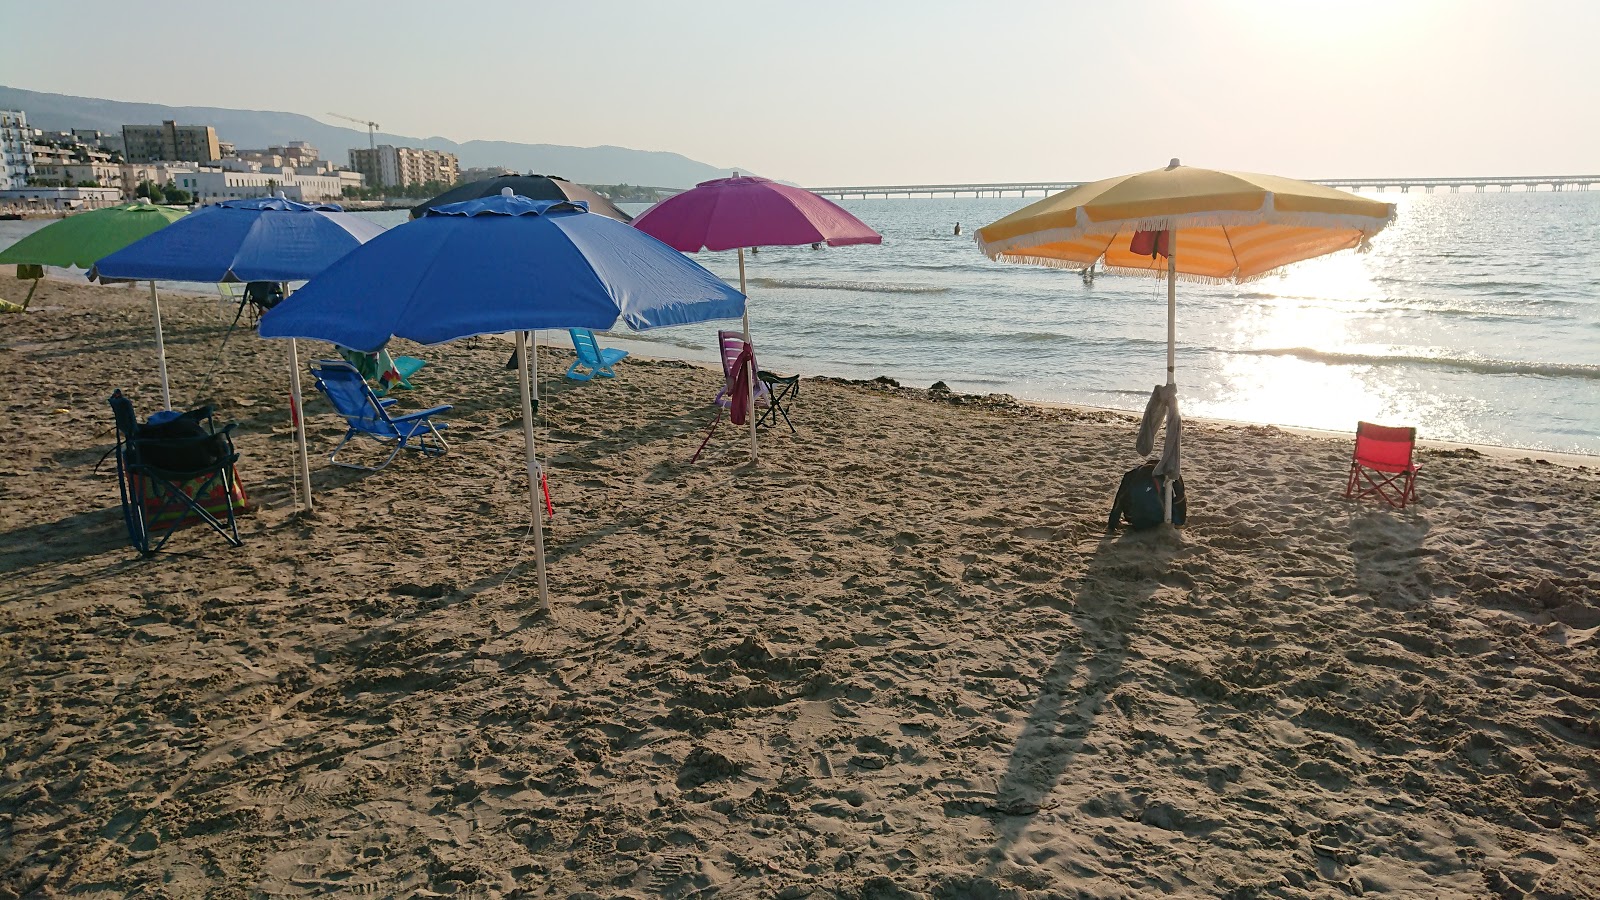 Spiaggia Libera的照片 海滩度假区